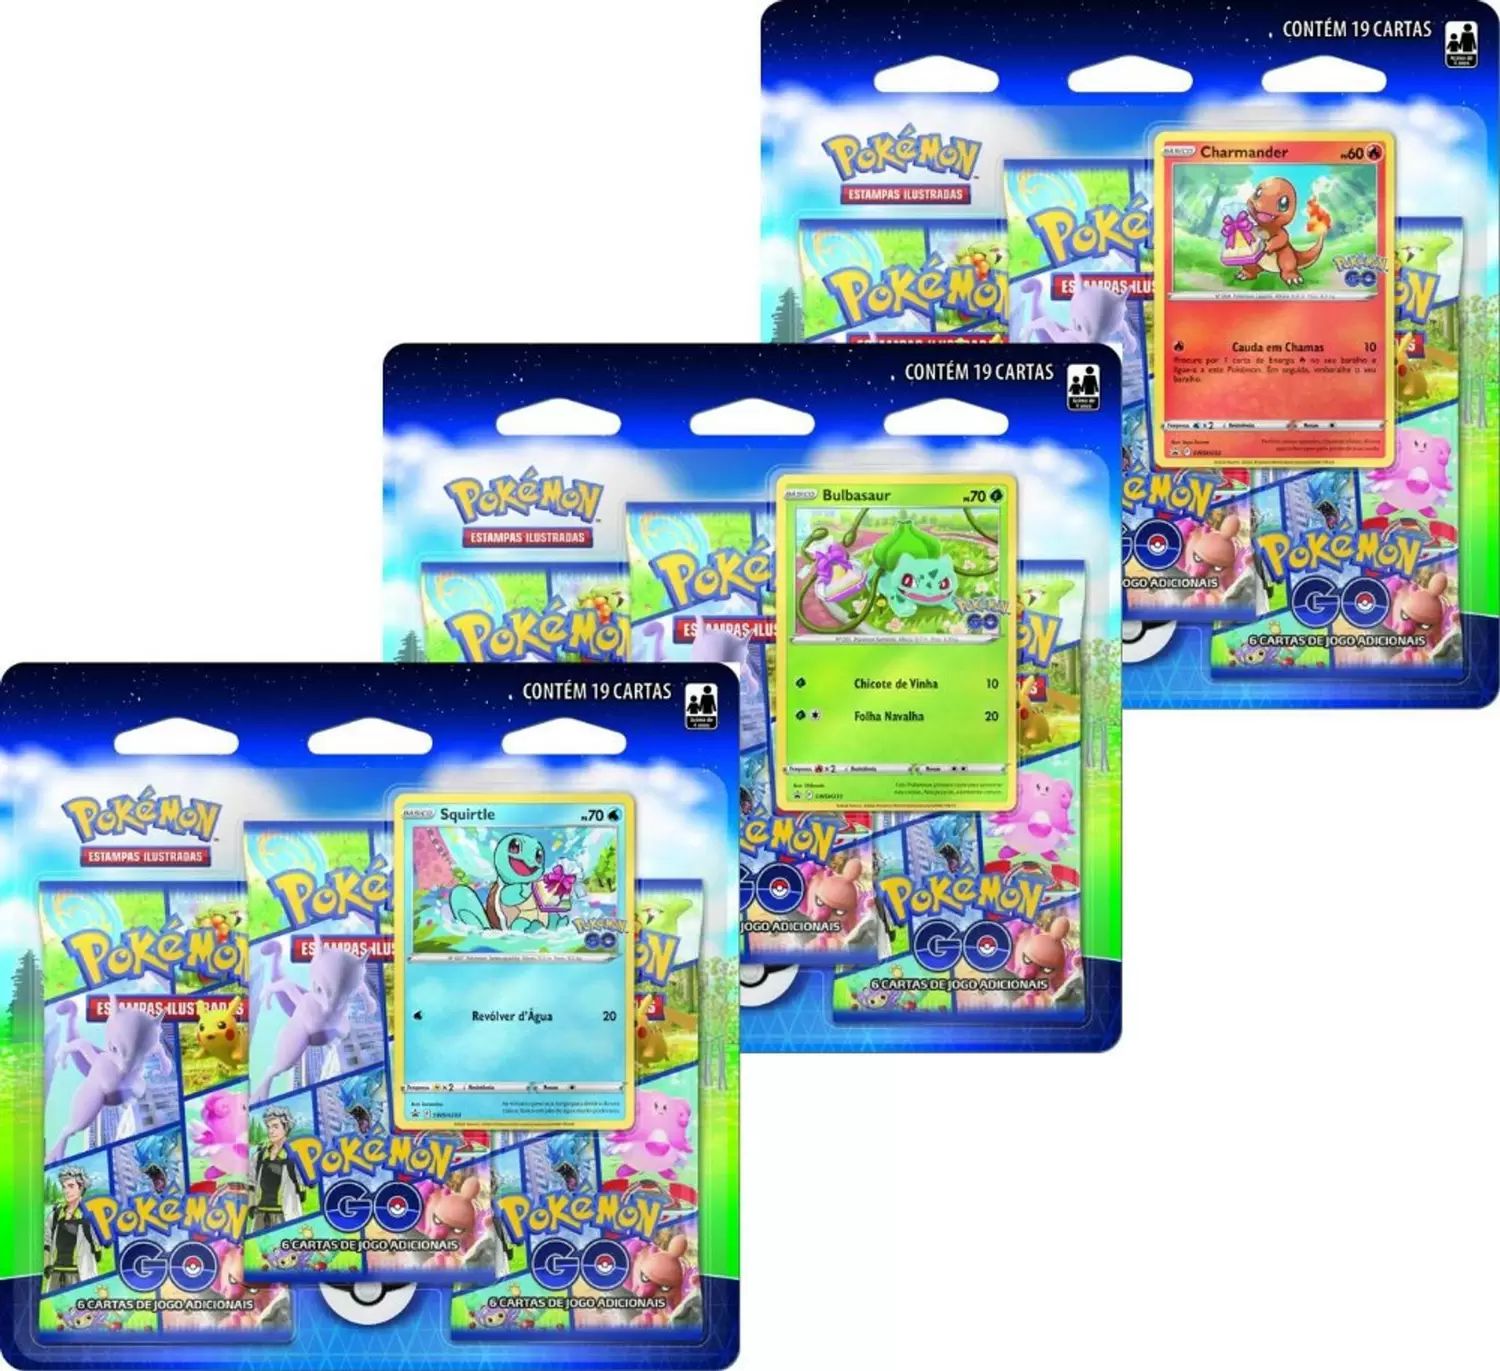 Galeria de Cartas  Pokémon GO do Pokémon Estampas Ilustradas